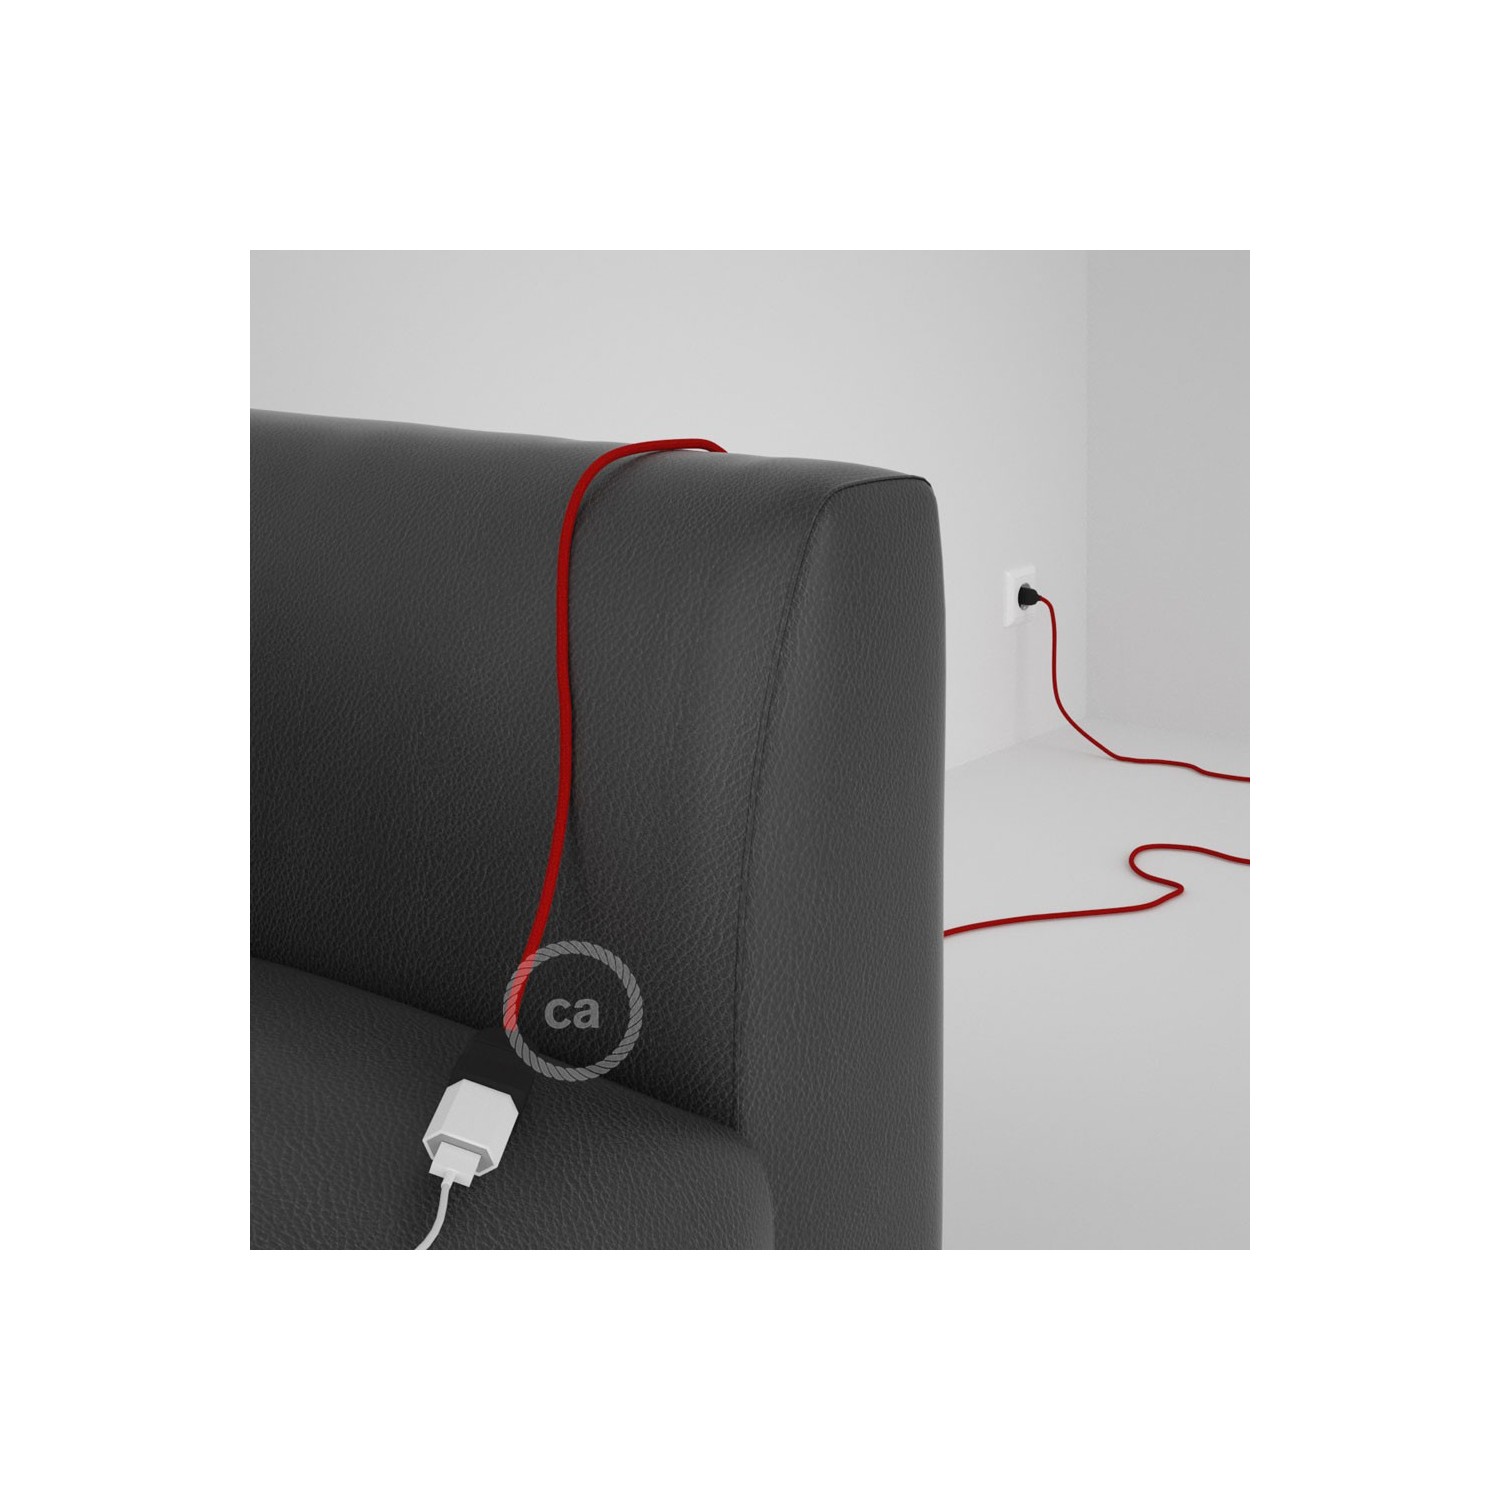 Rallonge électrique avec câble textile RC35 Coton Rouge Feu 2P 10A Made in Italy.